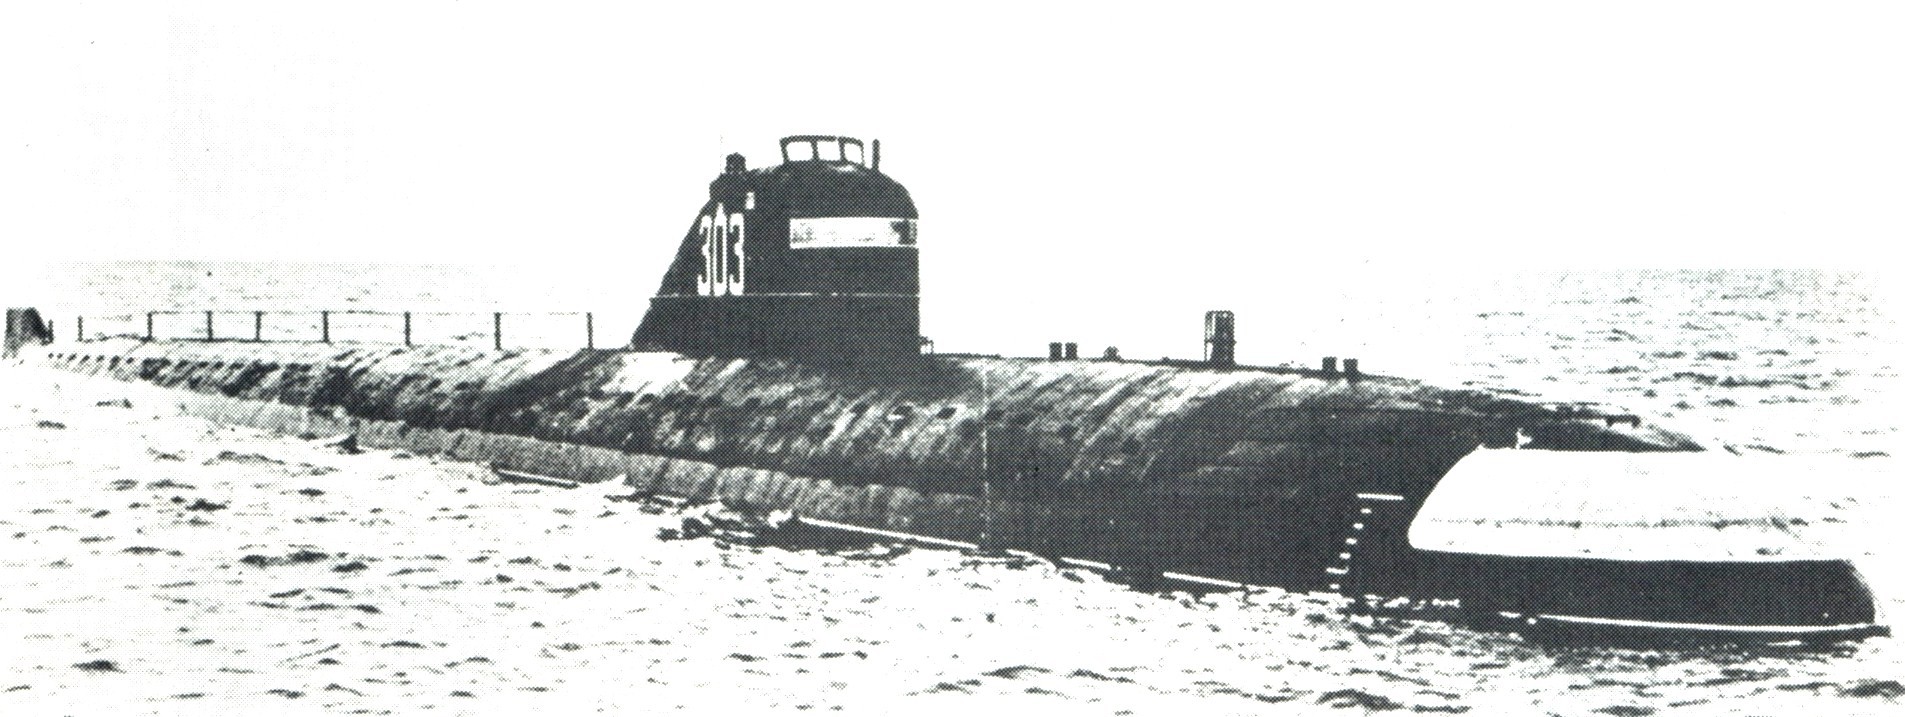 Первую пл. Подводной лодки к-3 «Ленинский комсомол». Первая атомная подводная лодка СССР К-3. Первая атомная подводная лодка СССР К-3 Ленинский комсомол. Атомная подводная лодка к-3 проекта 627 («Ленинский комсомол»).